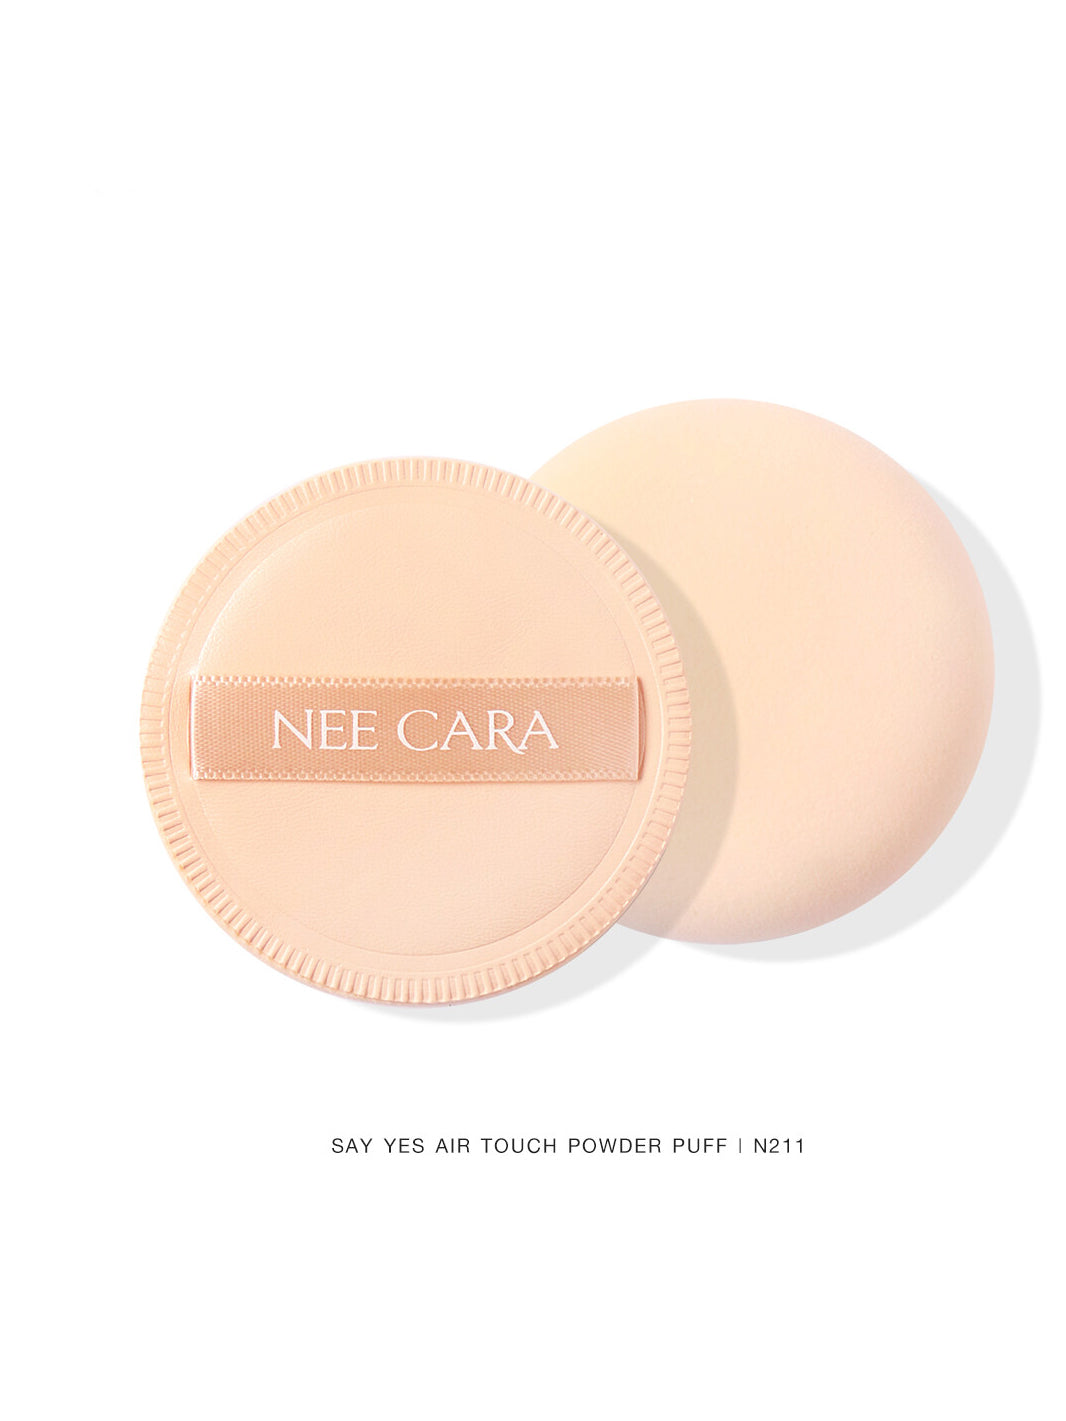 Nee Cara Air Touch Powder Puff N211 (Thai)